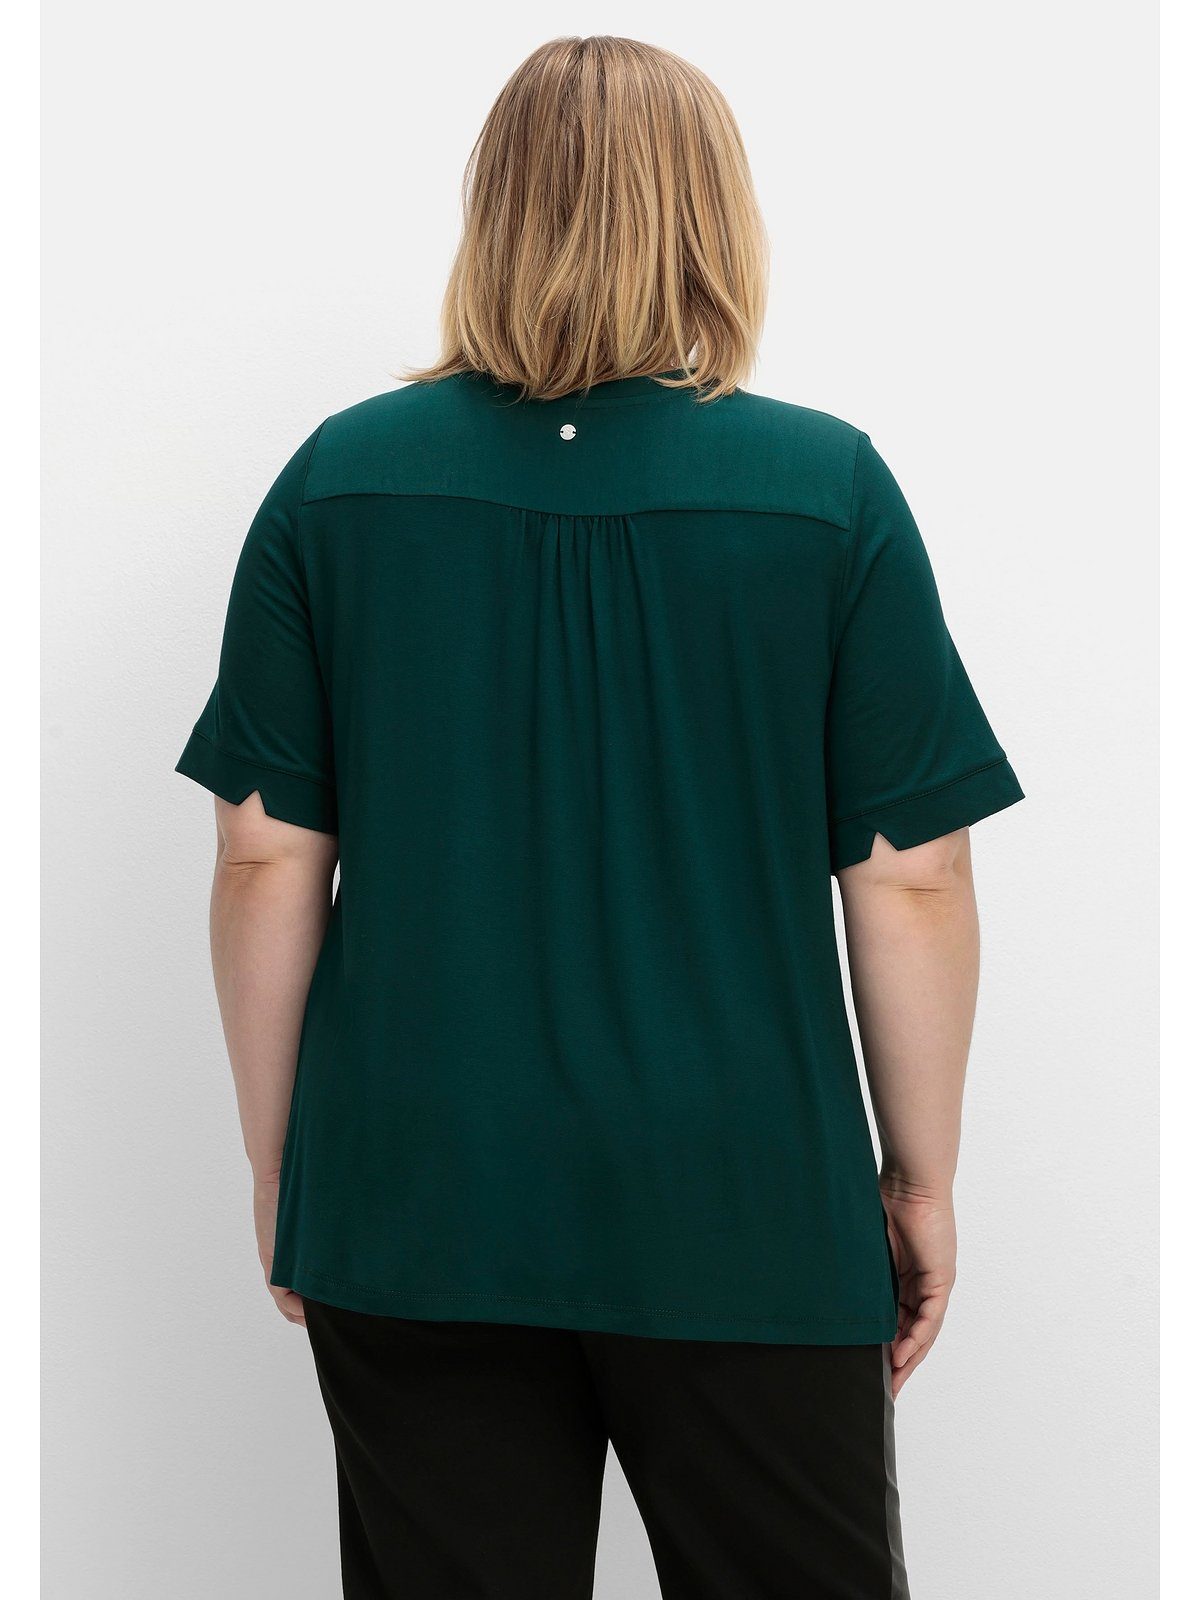 Sheego T-Shirt Große Ausschnitt mit Größen im Bindeband Material-Mix, am